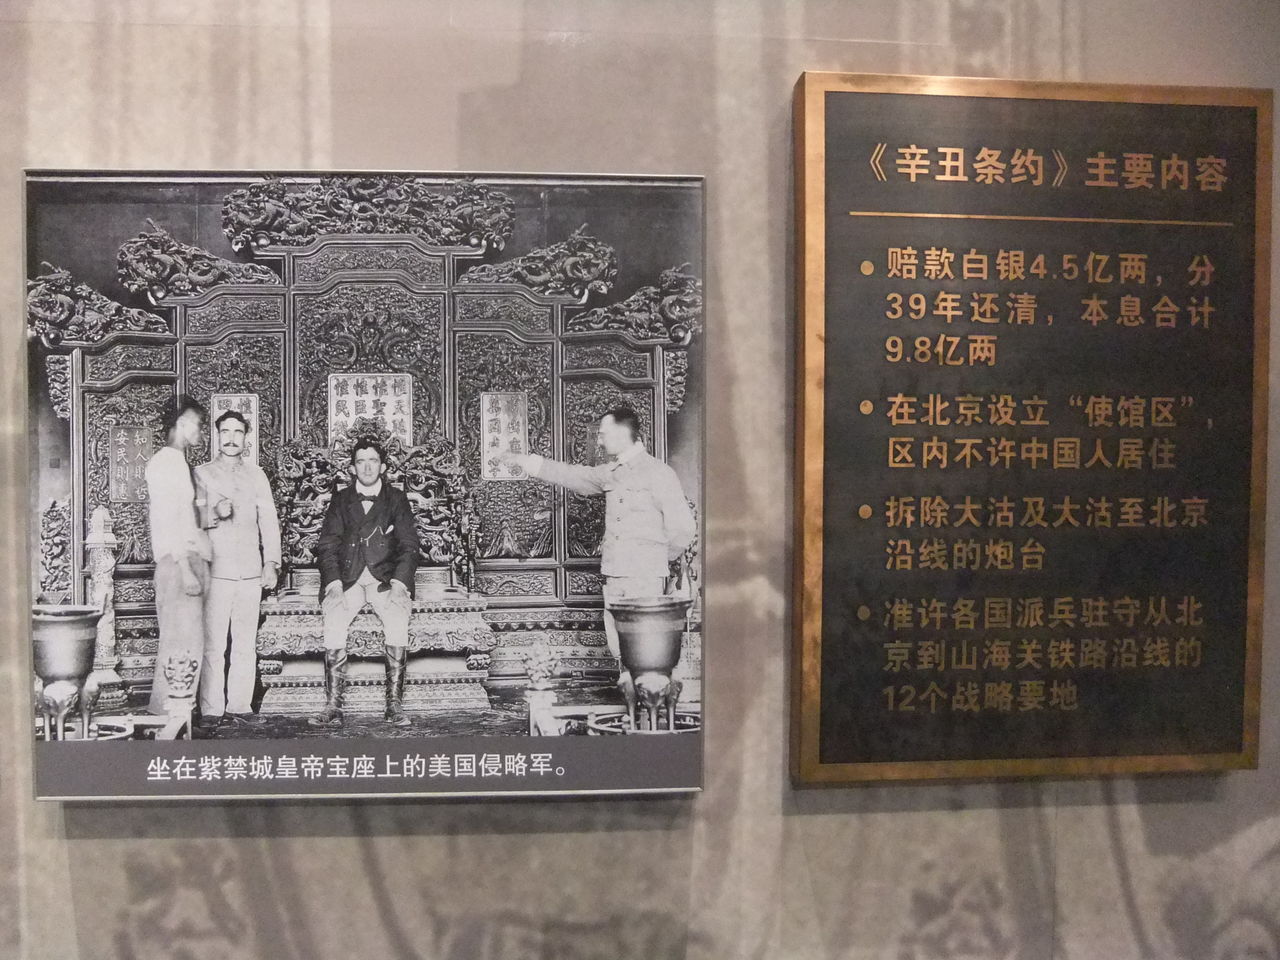 探訪記 中国国家博物館 清末 北京 世界史の旅 探訪記と歴史グッズ